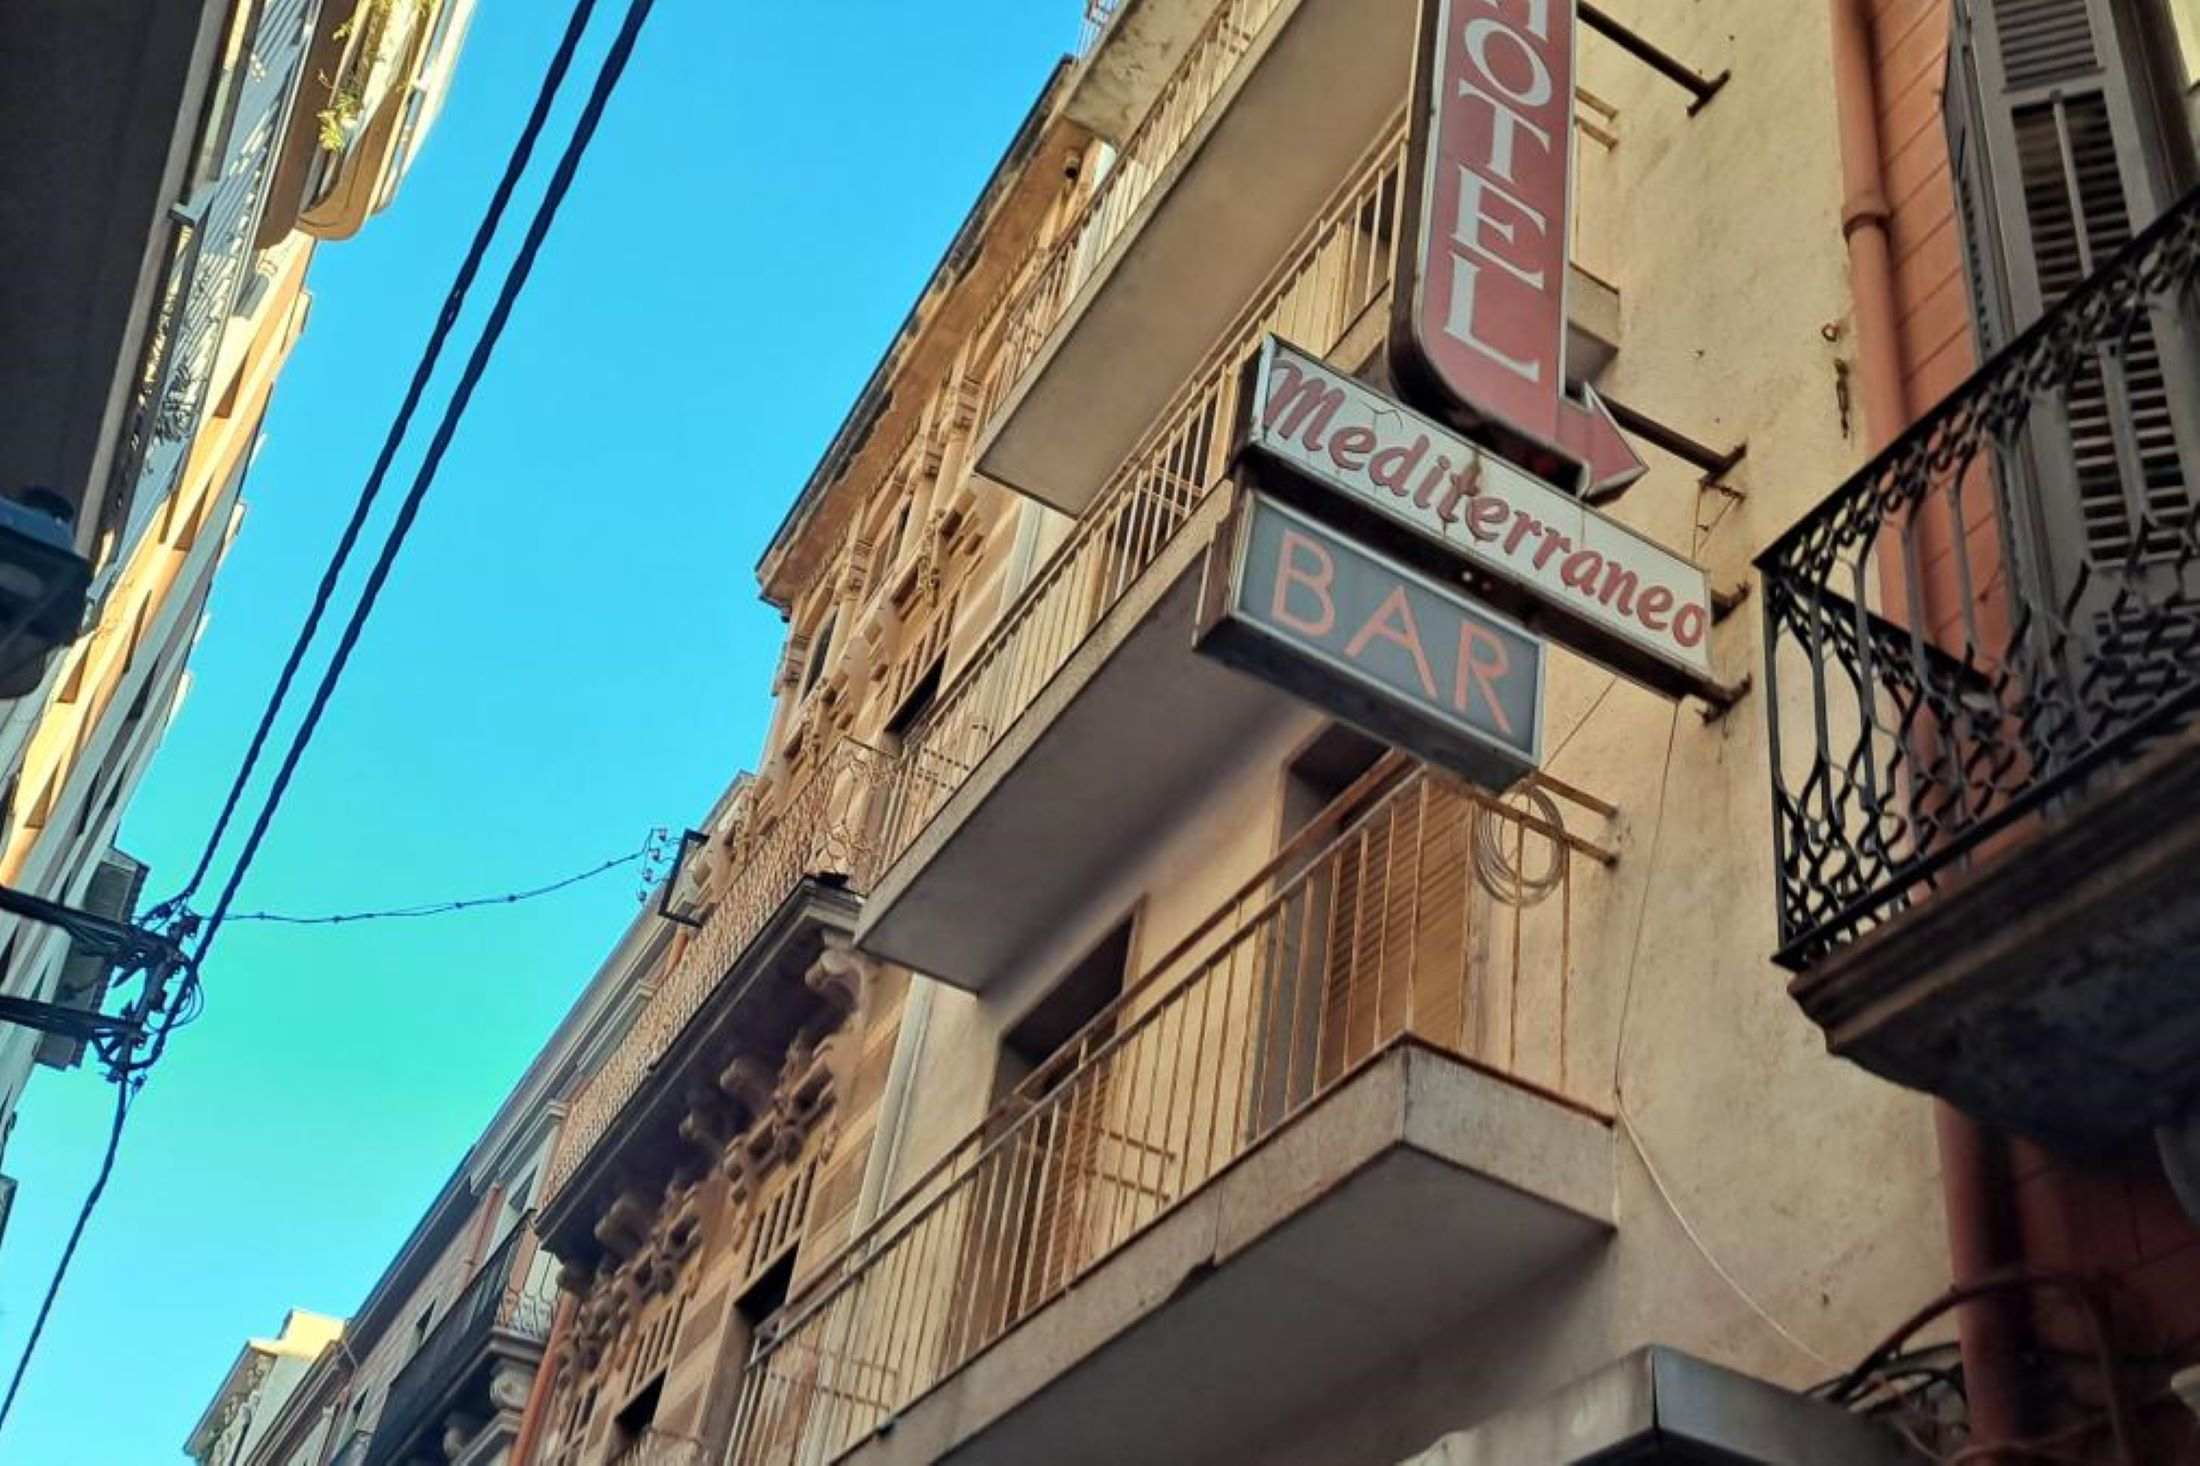 La Generalitat frena la subhasta d'un hotel dels Anlló a Sant Feliu de Guíxols perquè està ocupat